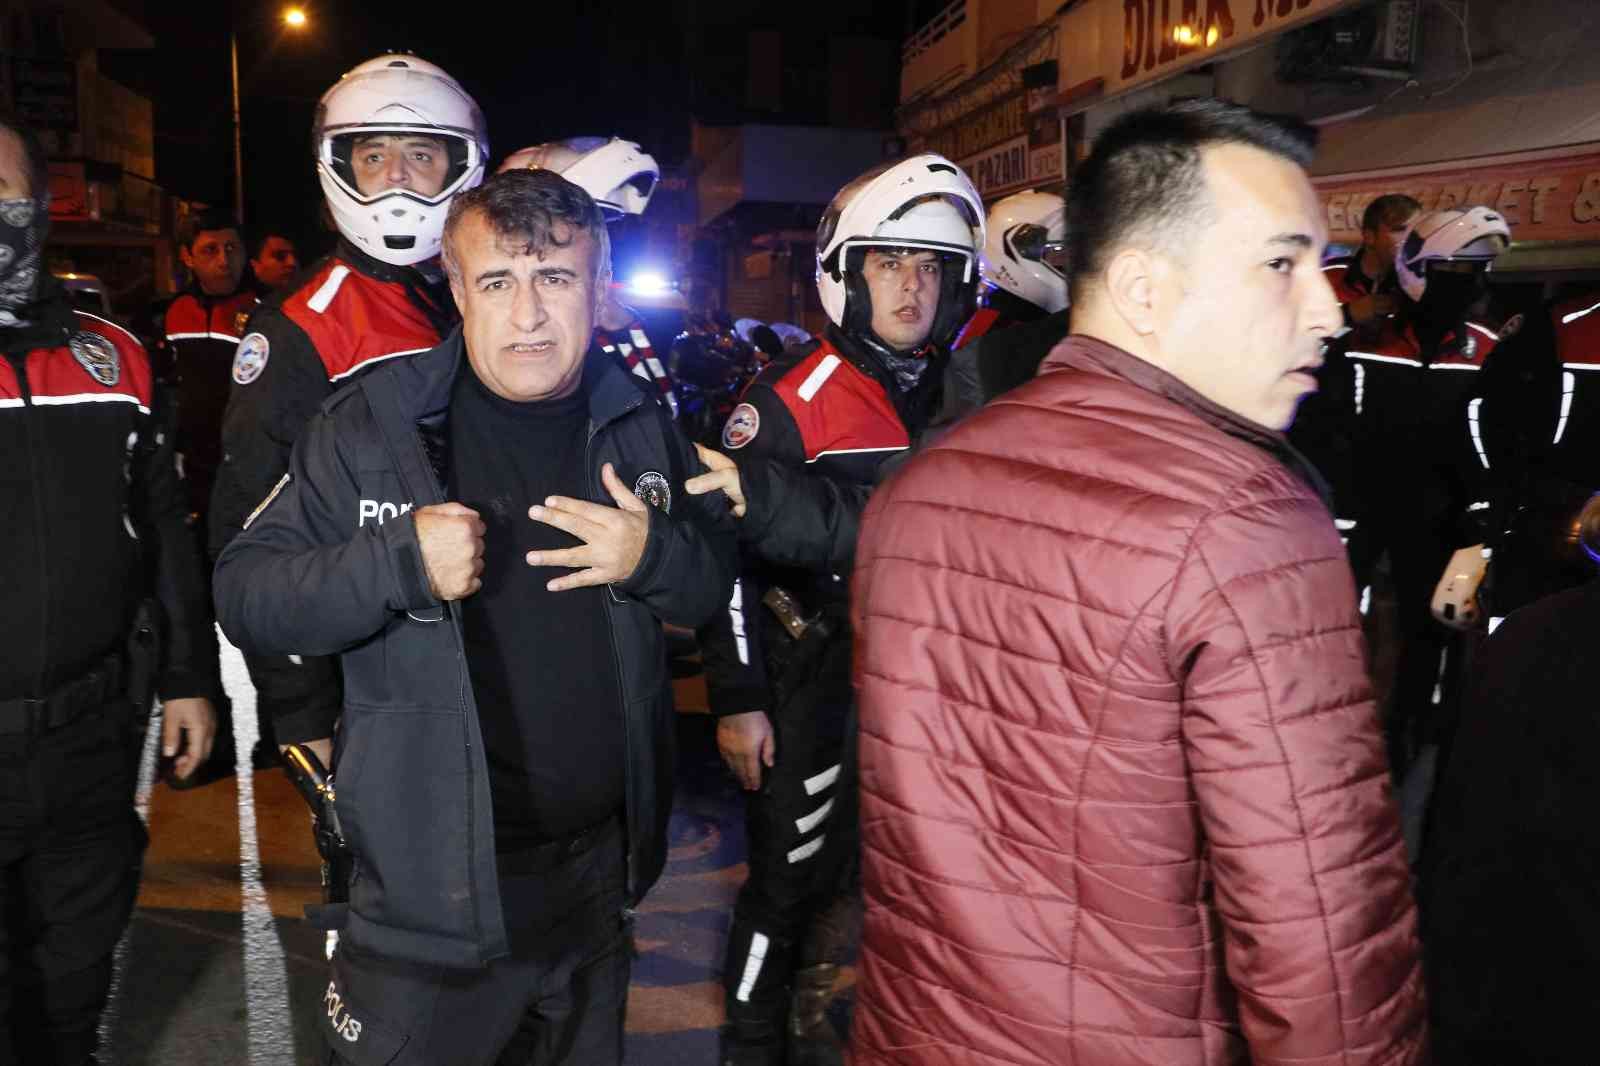 Adana’da kavgaya müdahale eden polis göğsünden bıçaklandı #adana